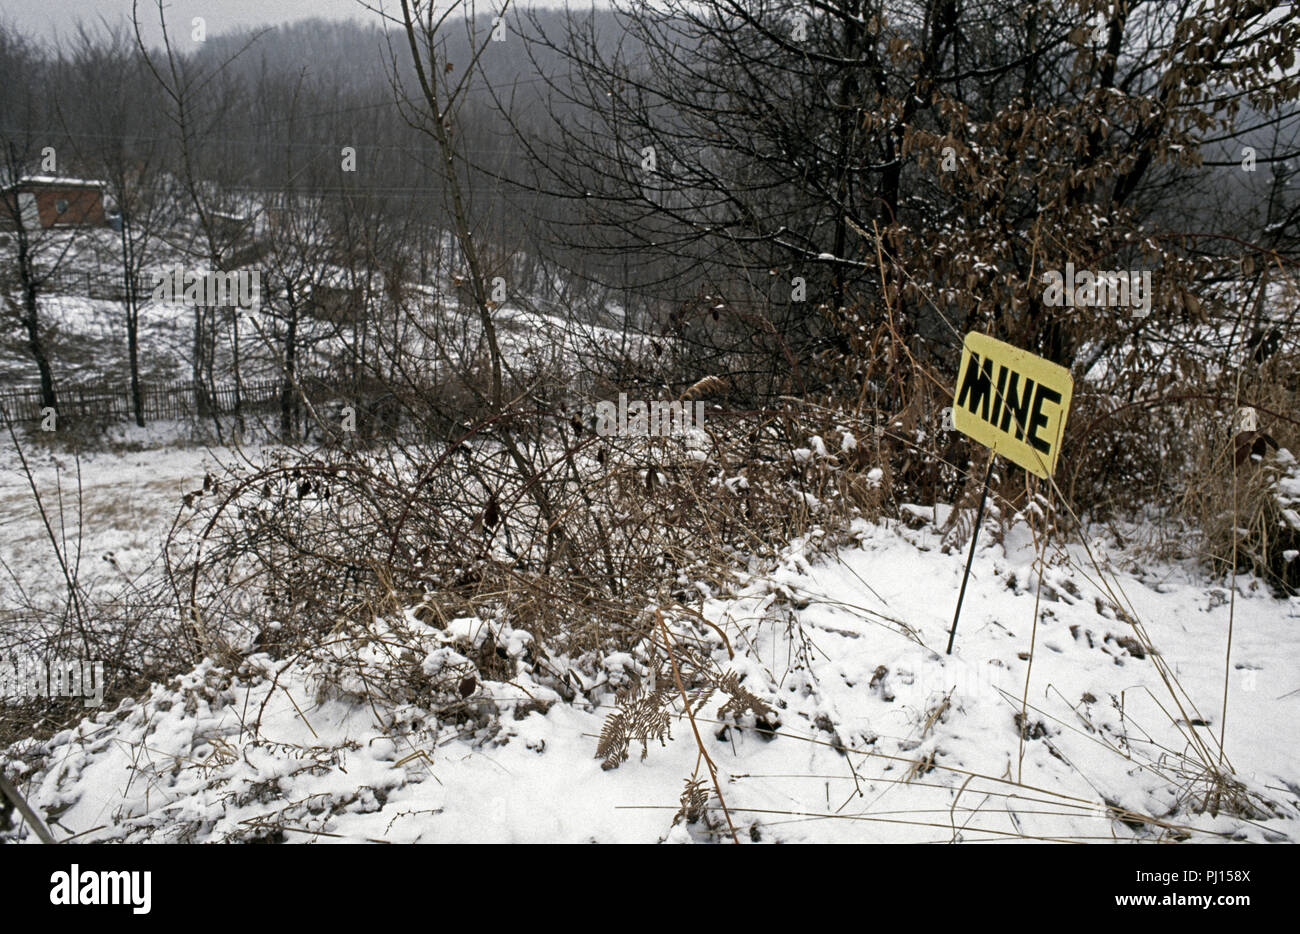 5 Marzo 1993 durante la guerra in Bosnia: a circa metà strada tra Sarajevo e Kiseljak, una strada minato è contrassegnato con un segno di rudimentali. Questo è stato nella terra di nessuno tra bosniaco-territorio controllato e che controllato dall'HVO (croati). Foto Stock